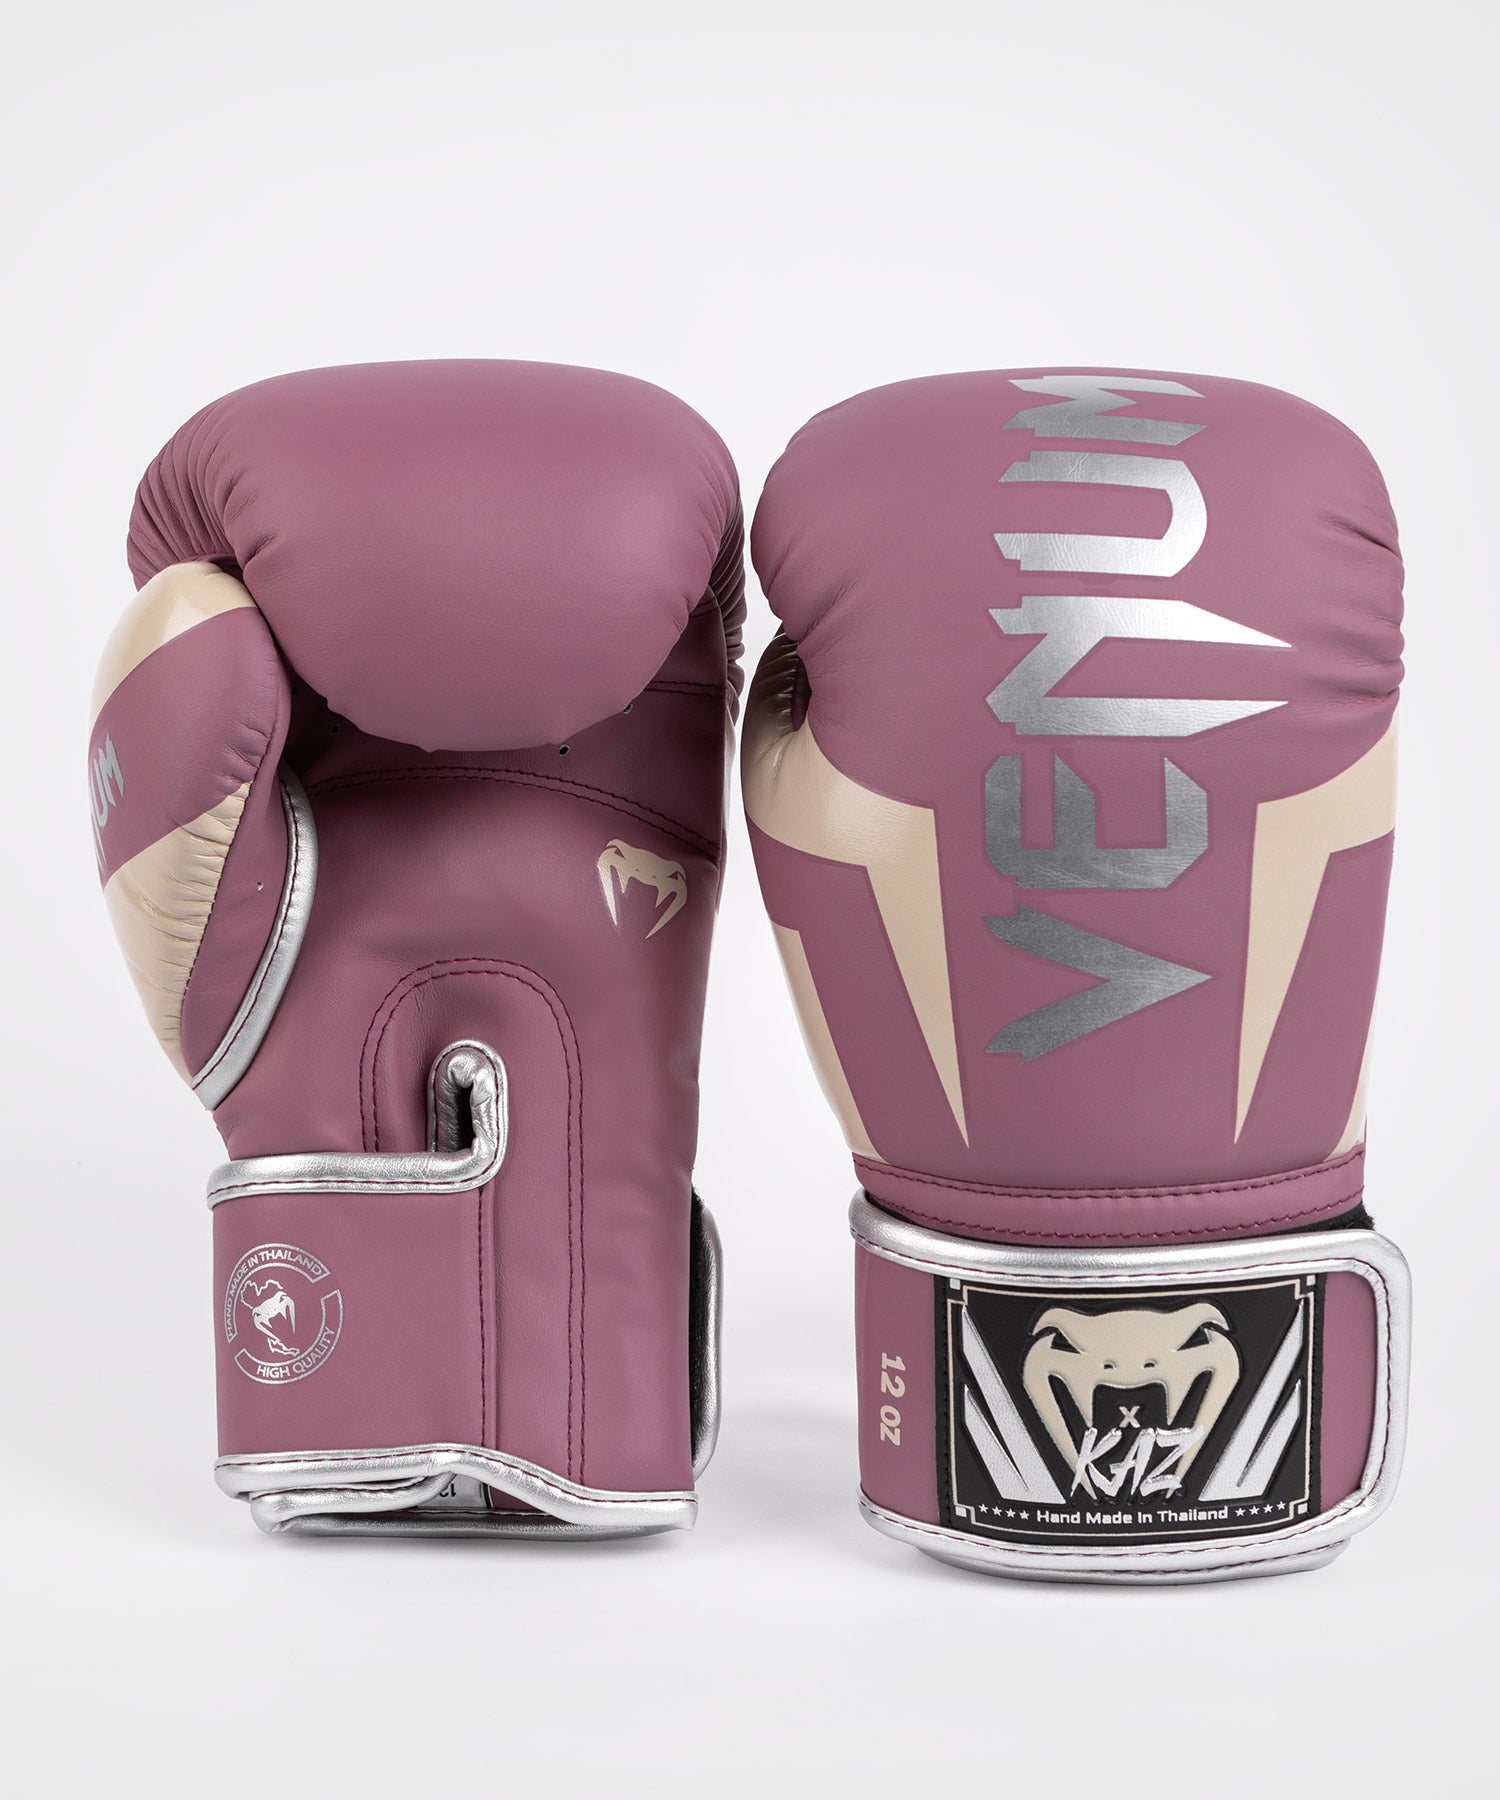 Venum Impact Monogram Hook and Loop Boxing Gloves - 8 oz. - Black